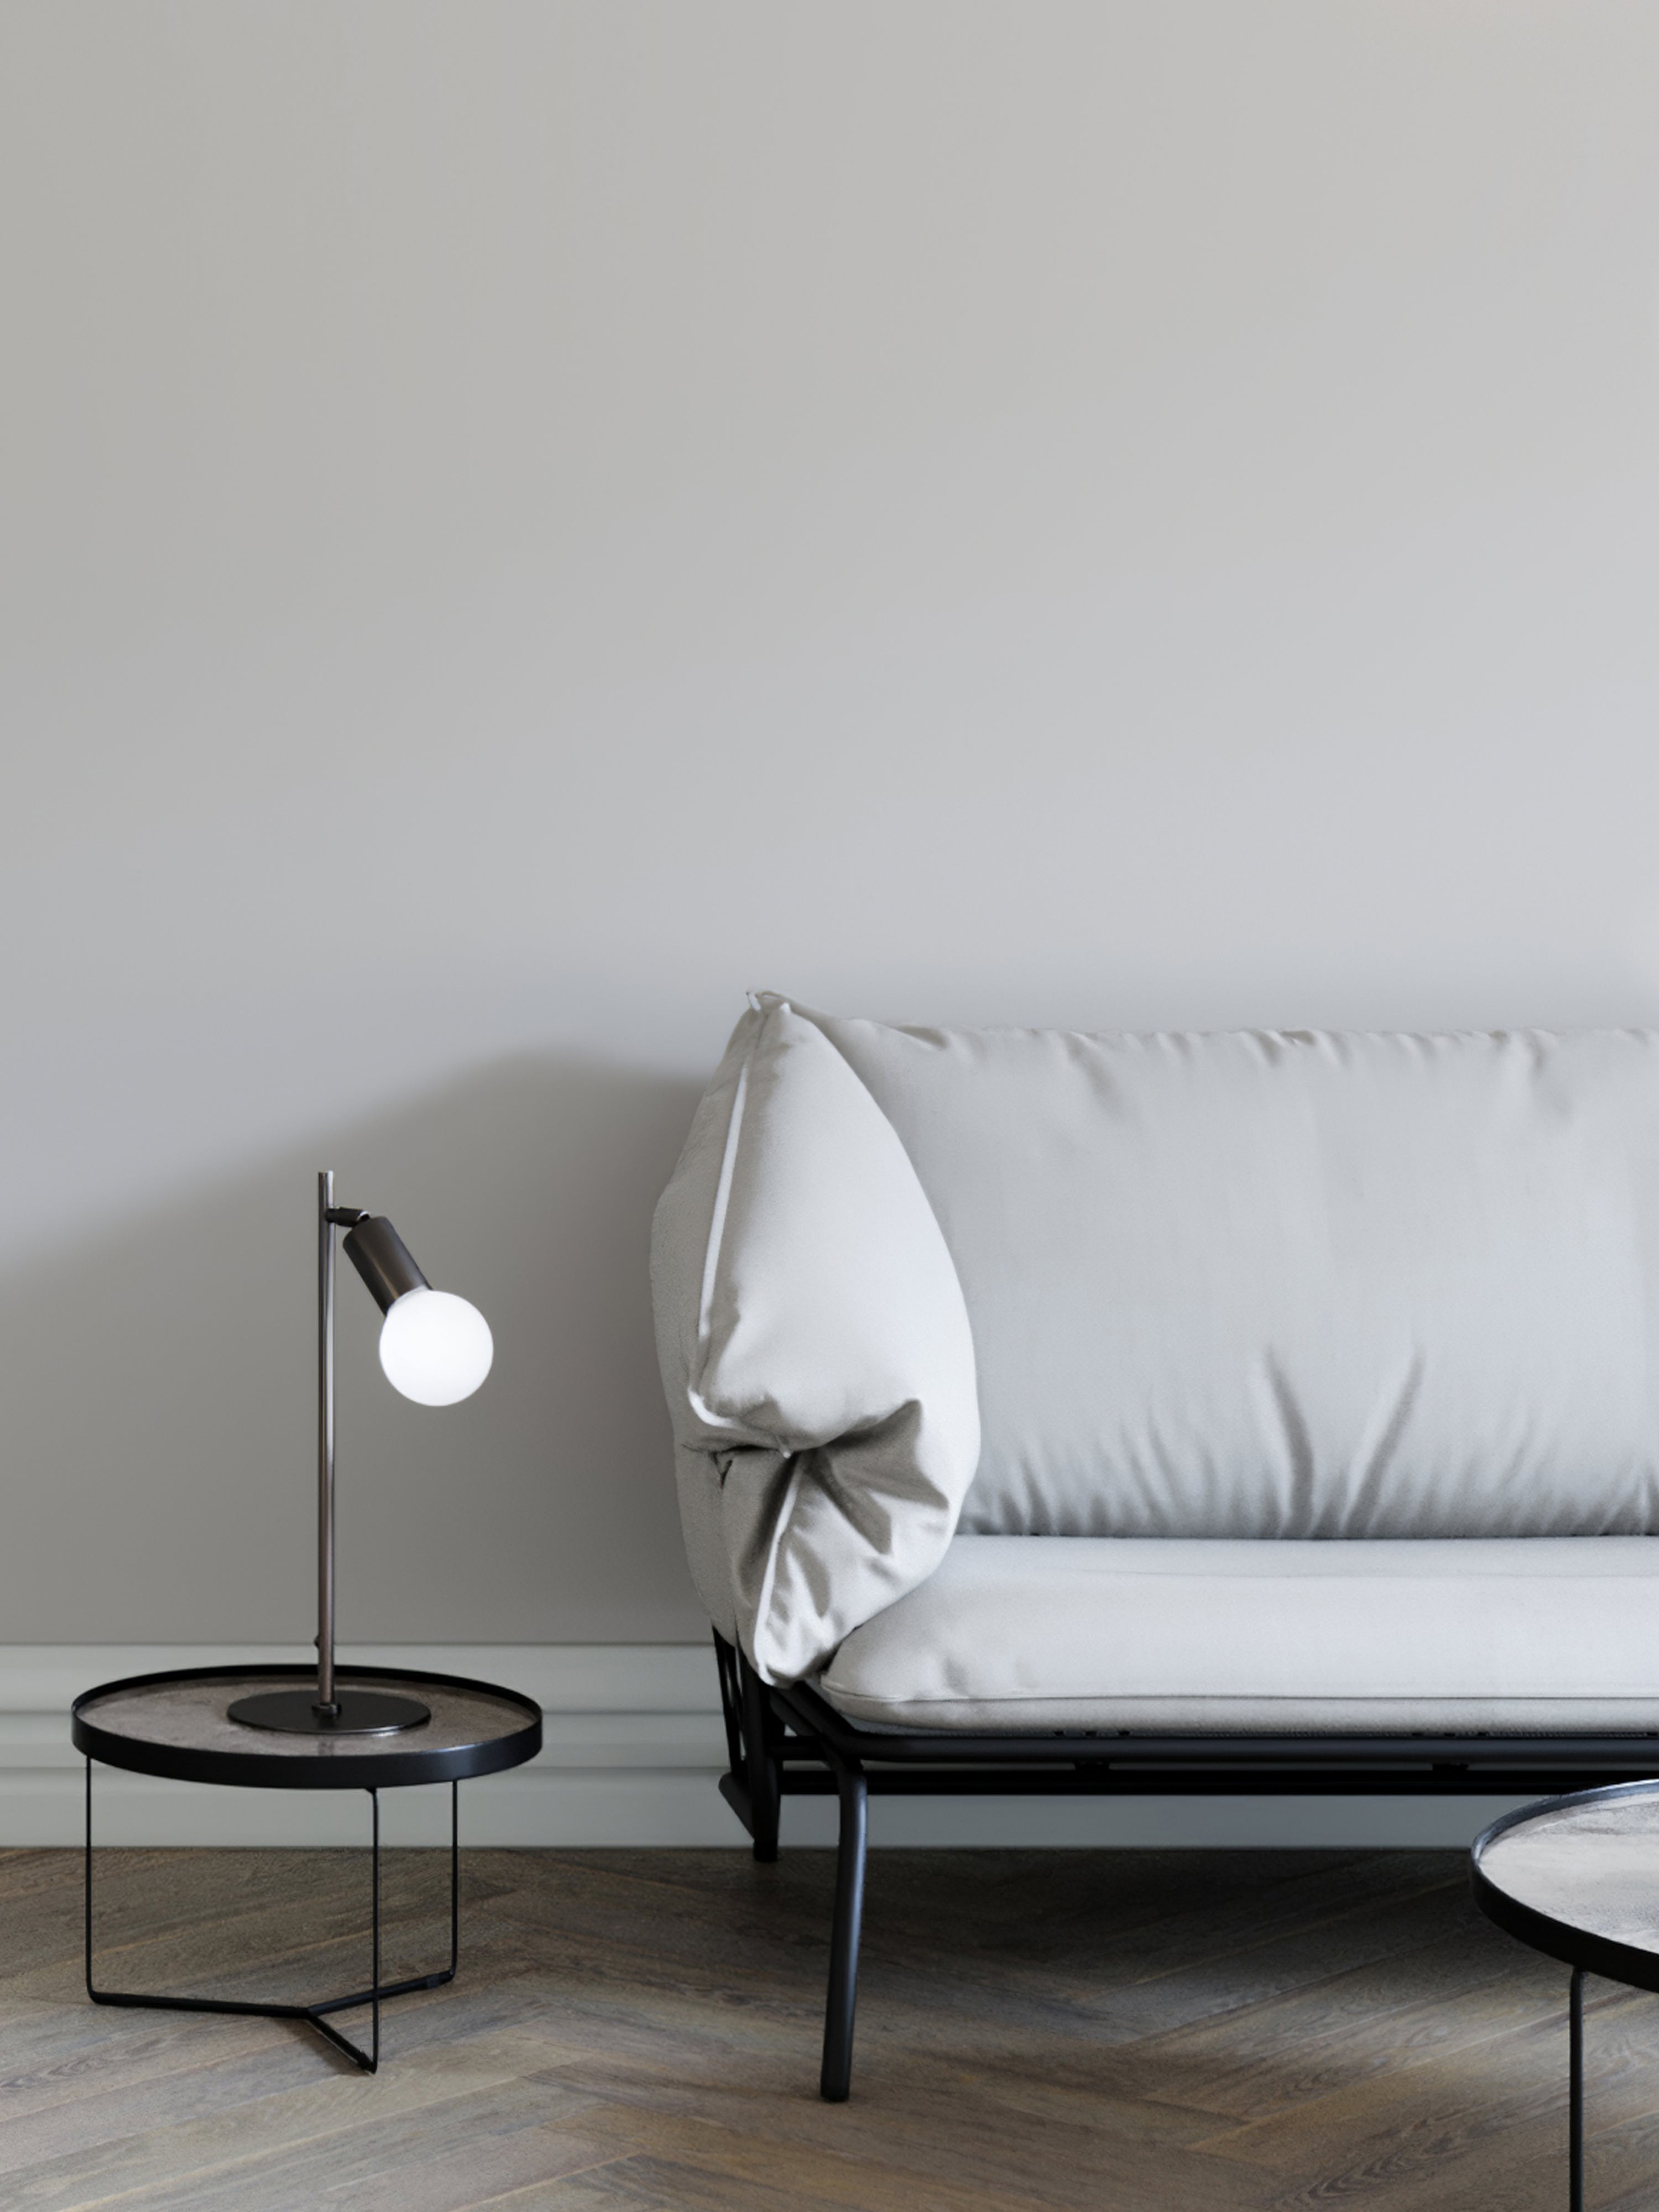 Lever - 1 light matt black task table lamp | Table Lamp | Lights & Lamps | UK | Modern Affordable Designer Lighting